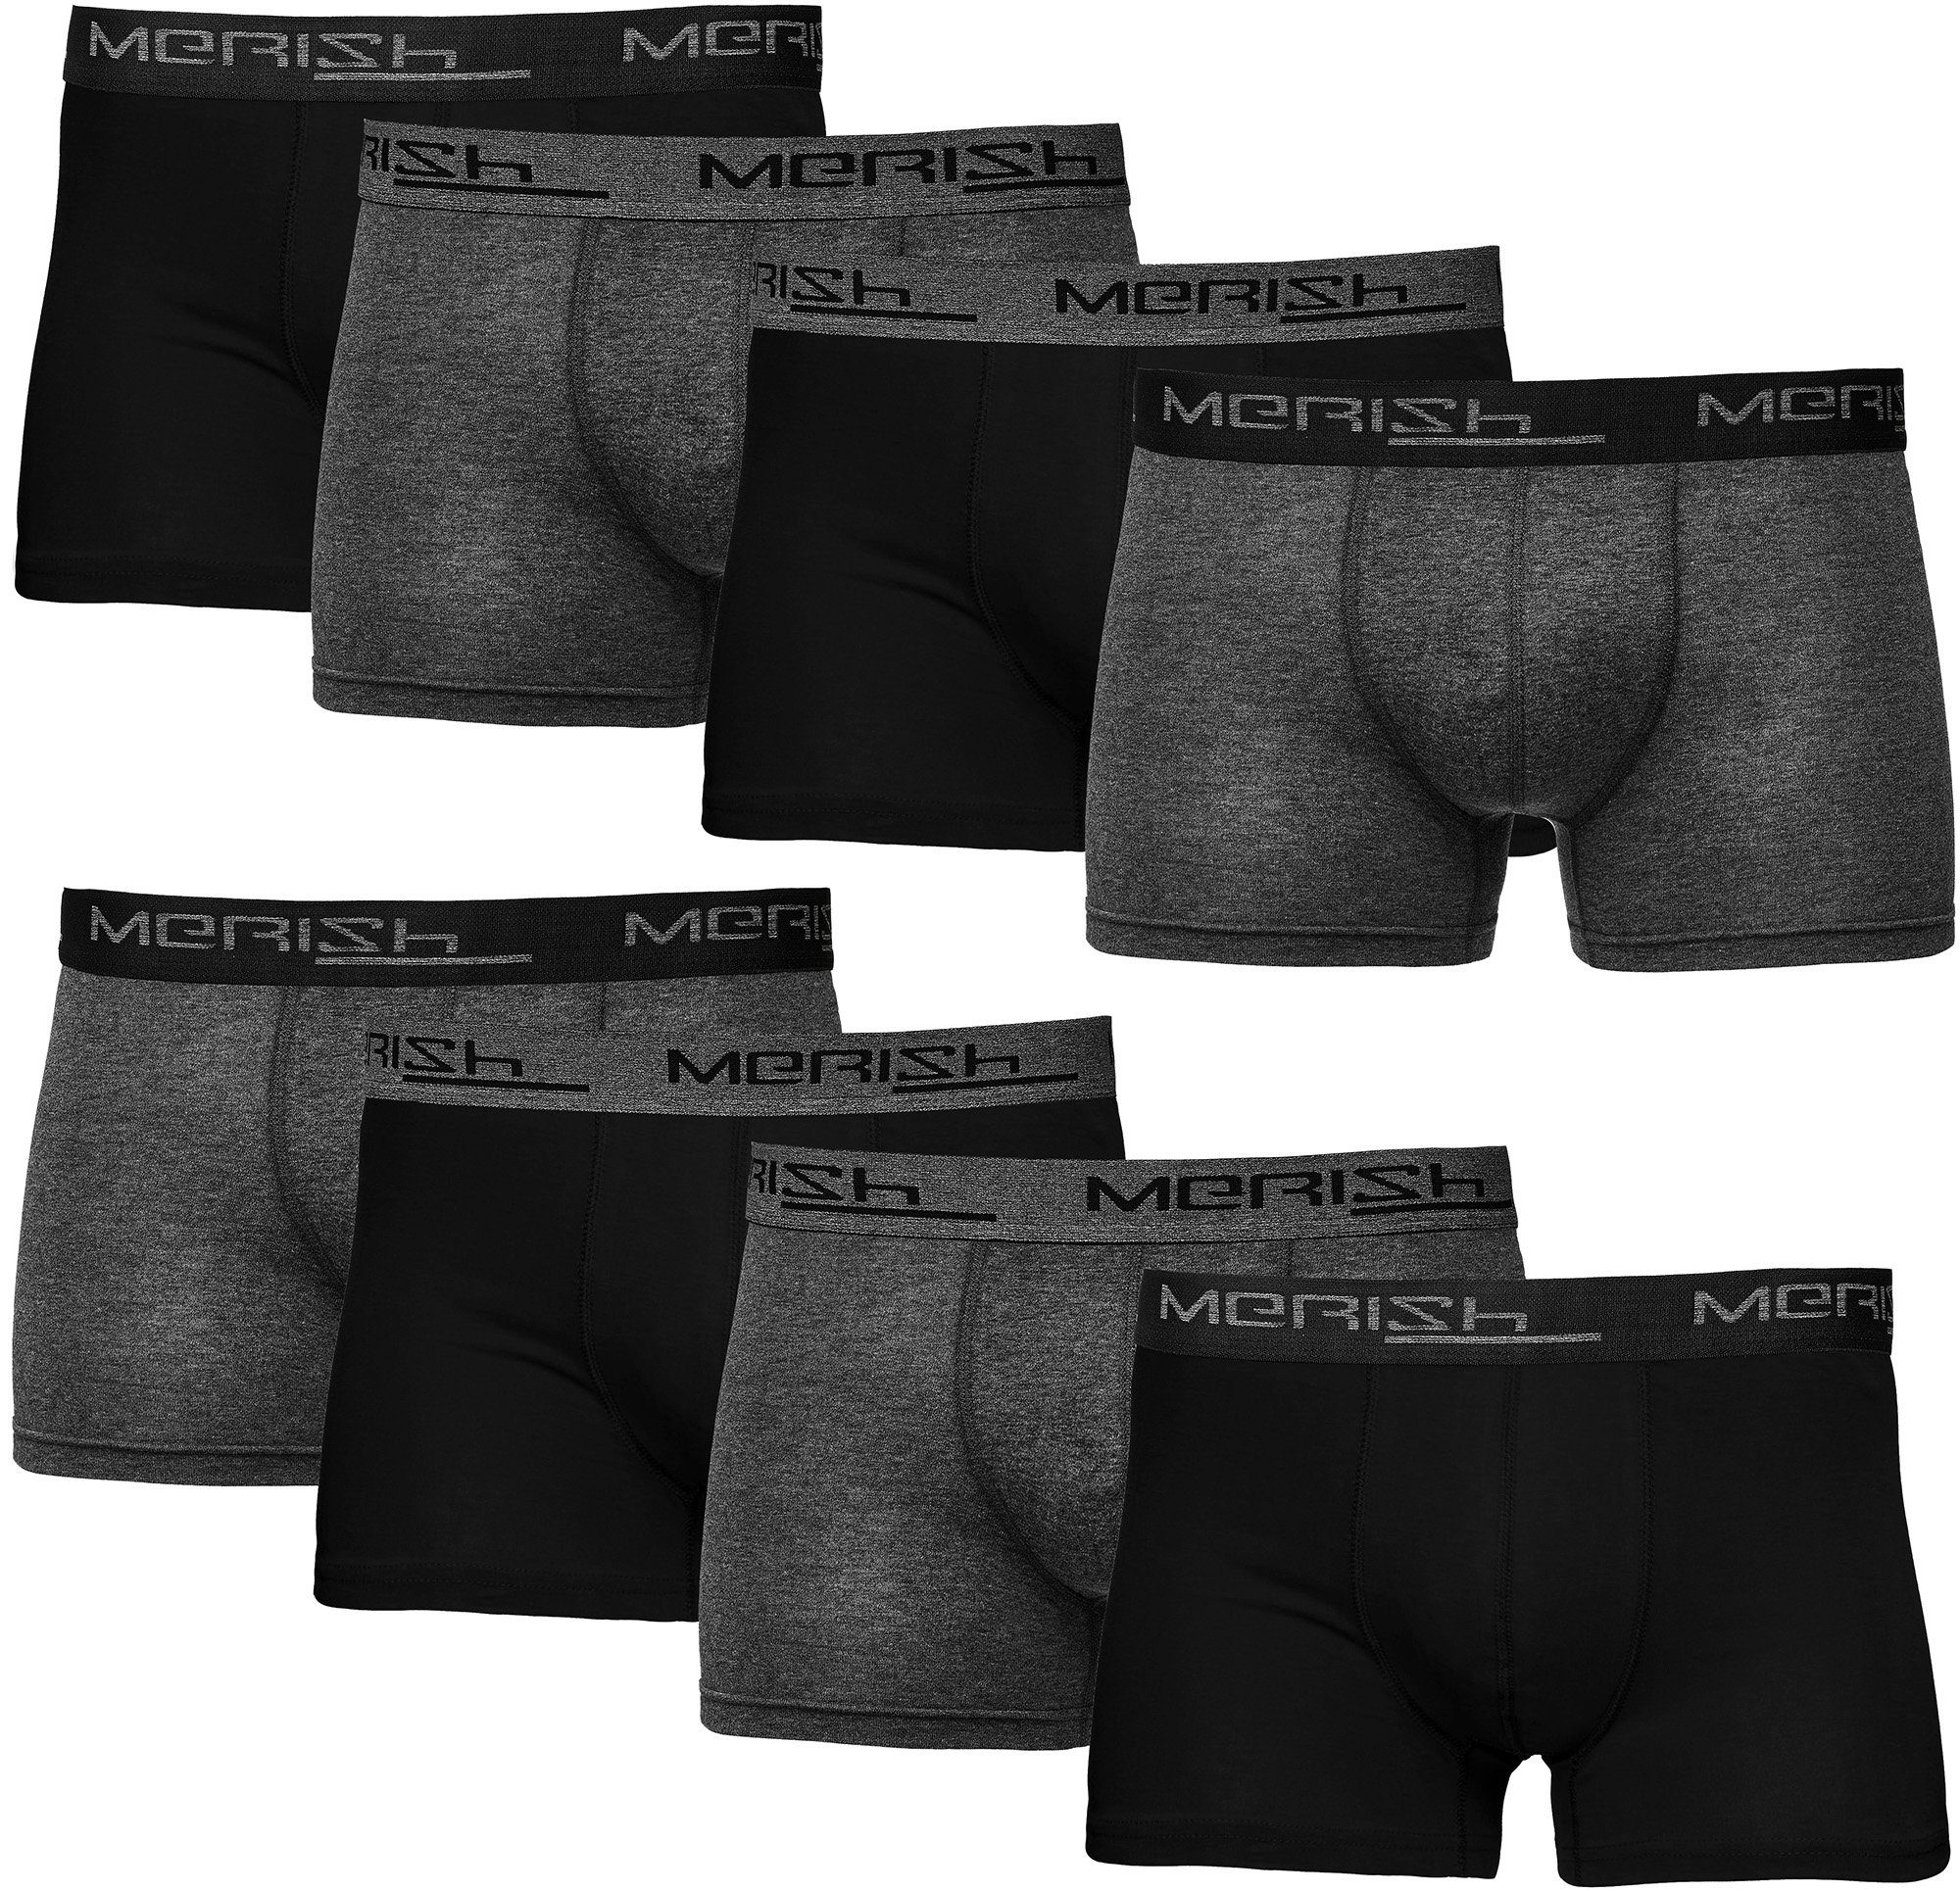 MERISH Boxershorts Herren Männer Unterhosen Baumwolle Premium Qualität perfekte Passform (Vorteilspack, 8er-Pack) S - 7XL 216e-anthrazit/schwarz